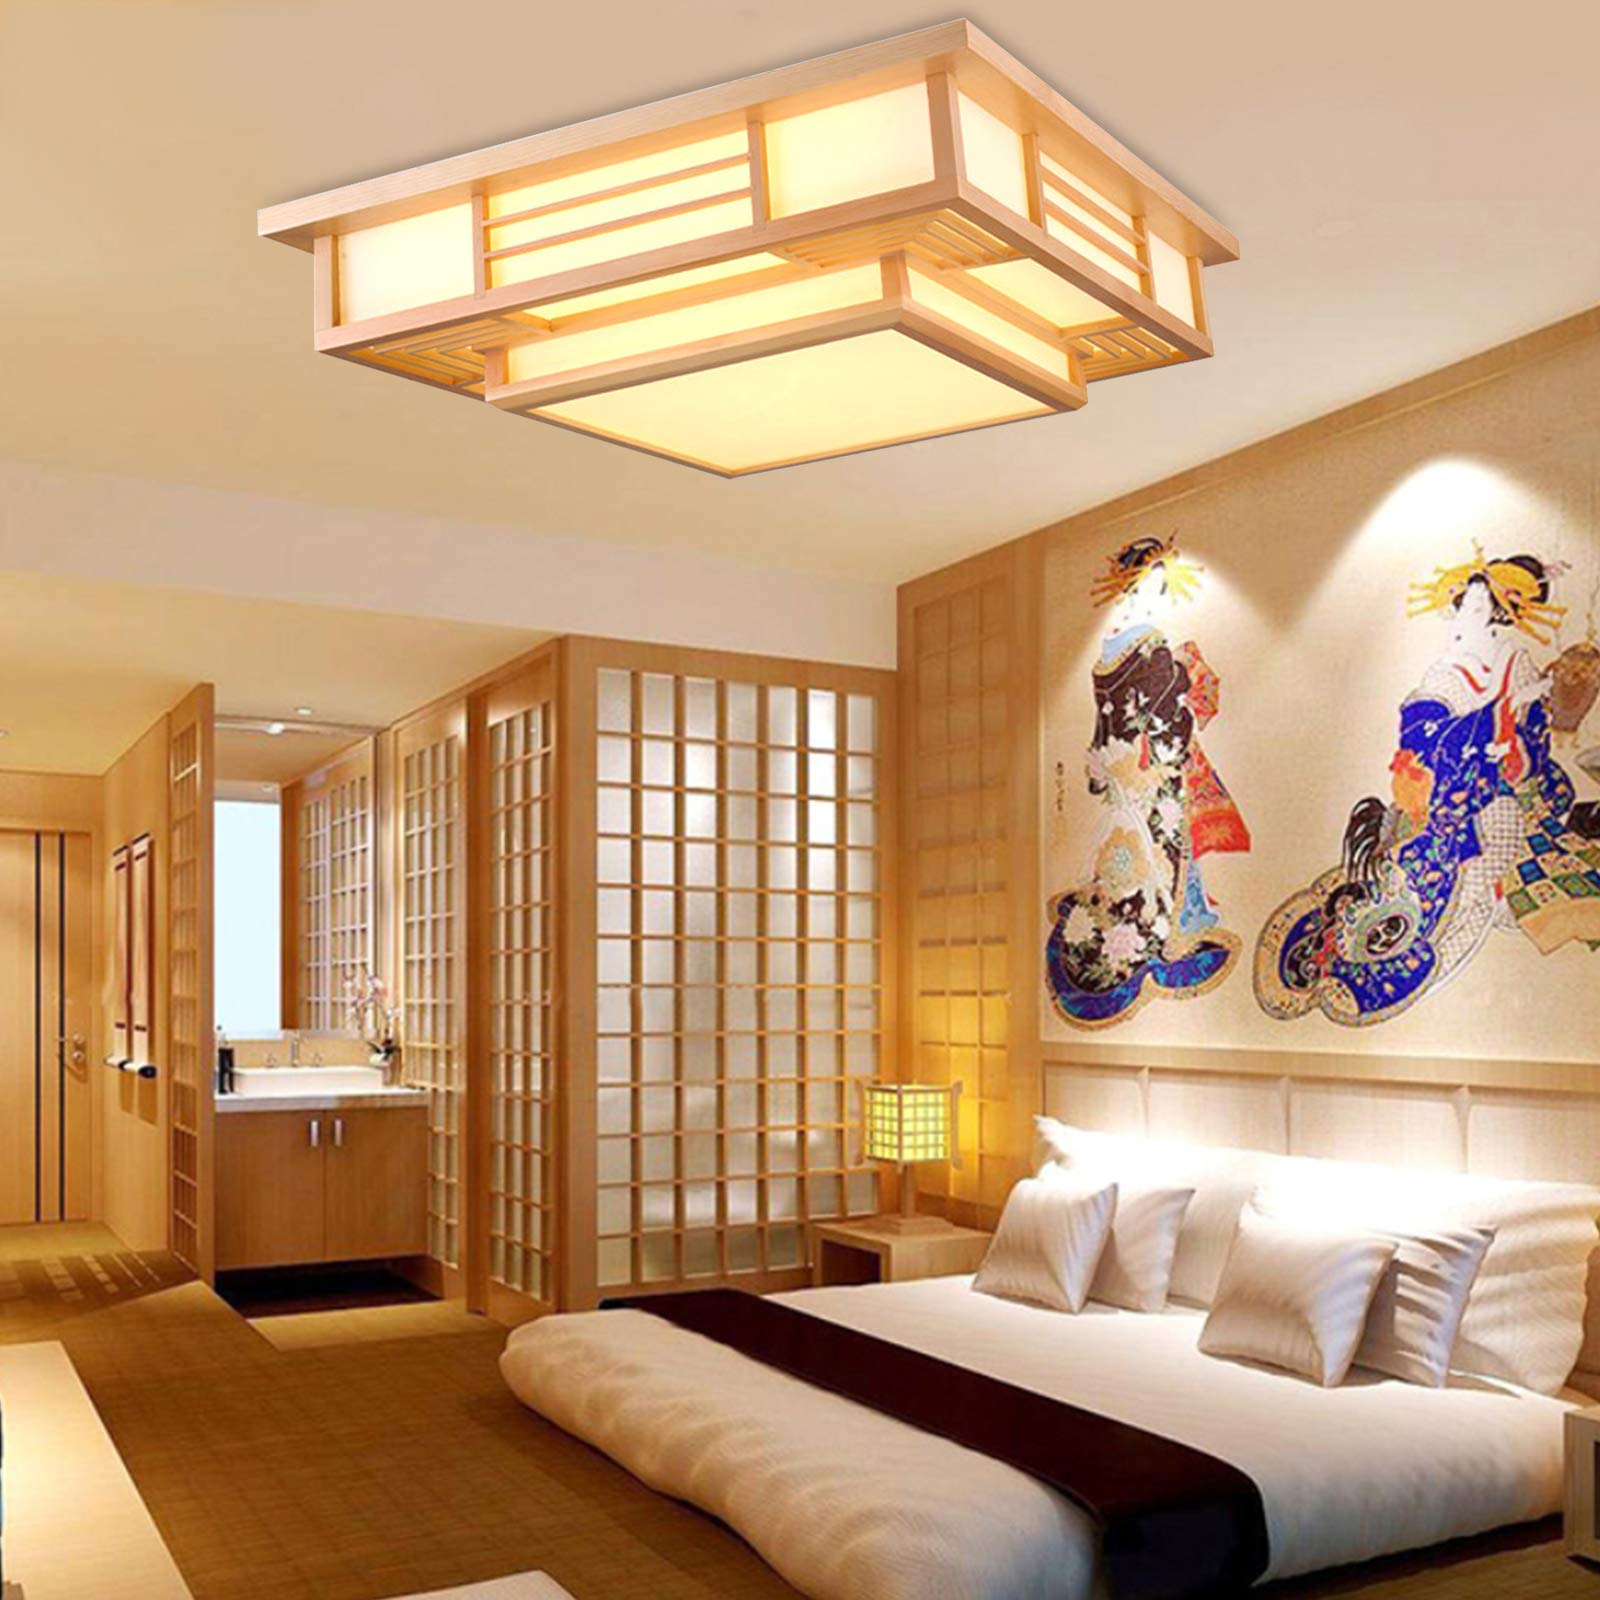 Plafoniera giapponese a intensità variabile, lampada da soffitto a LED in legno massiccio con geometria creativa Tatami, per soggiorno, camera da letto